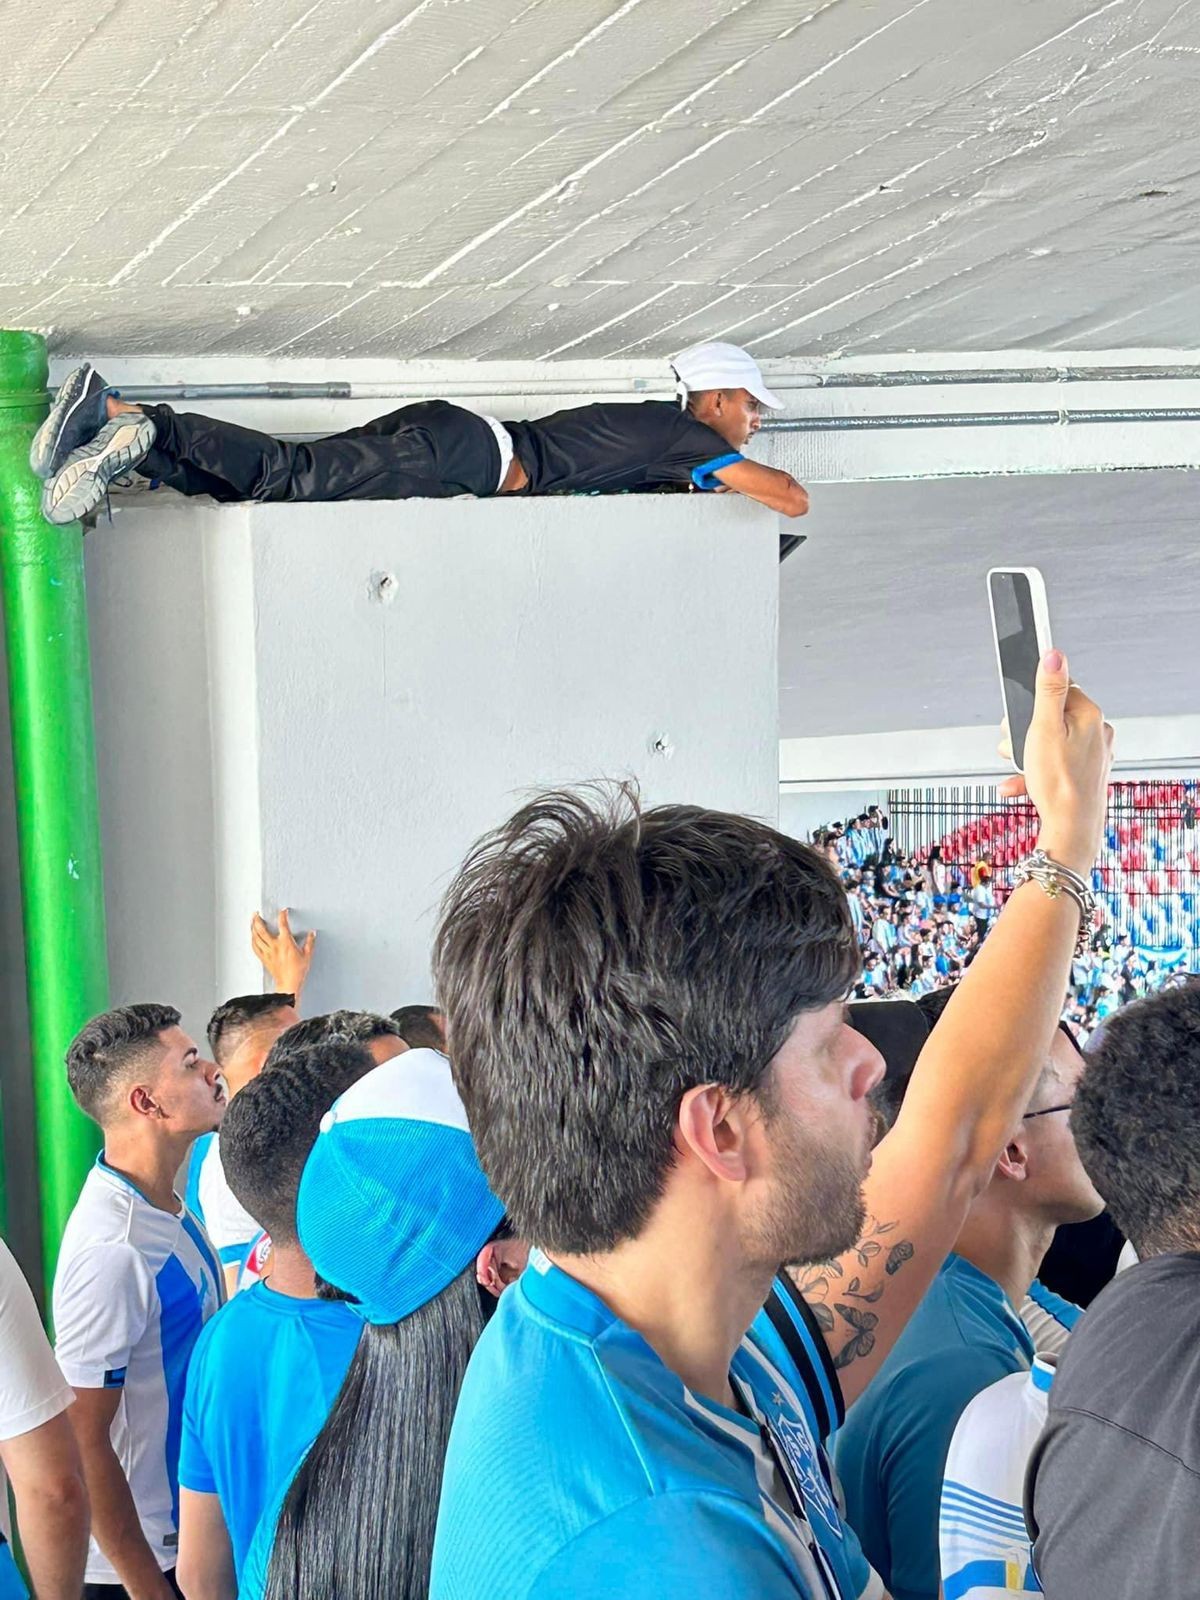 Em Mangueirão lotado, torcedor assiste jogo deitado em lugar inusitado: 